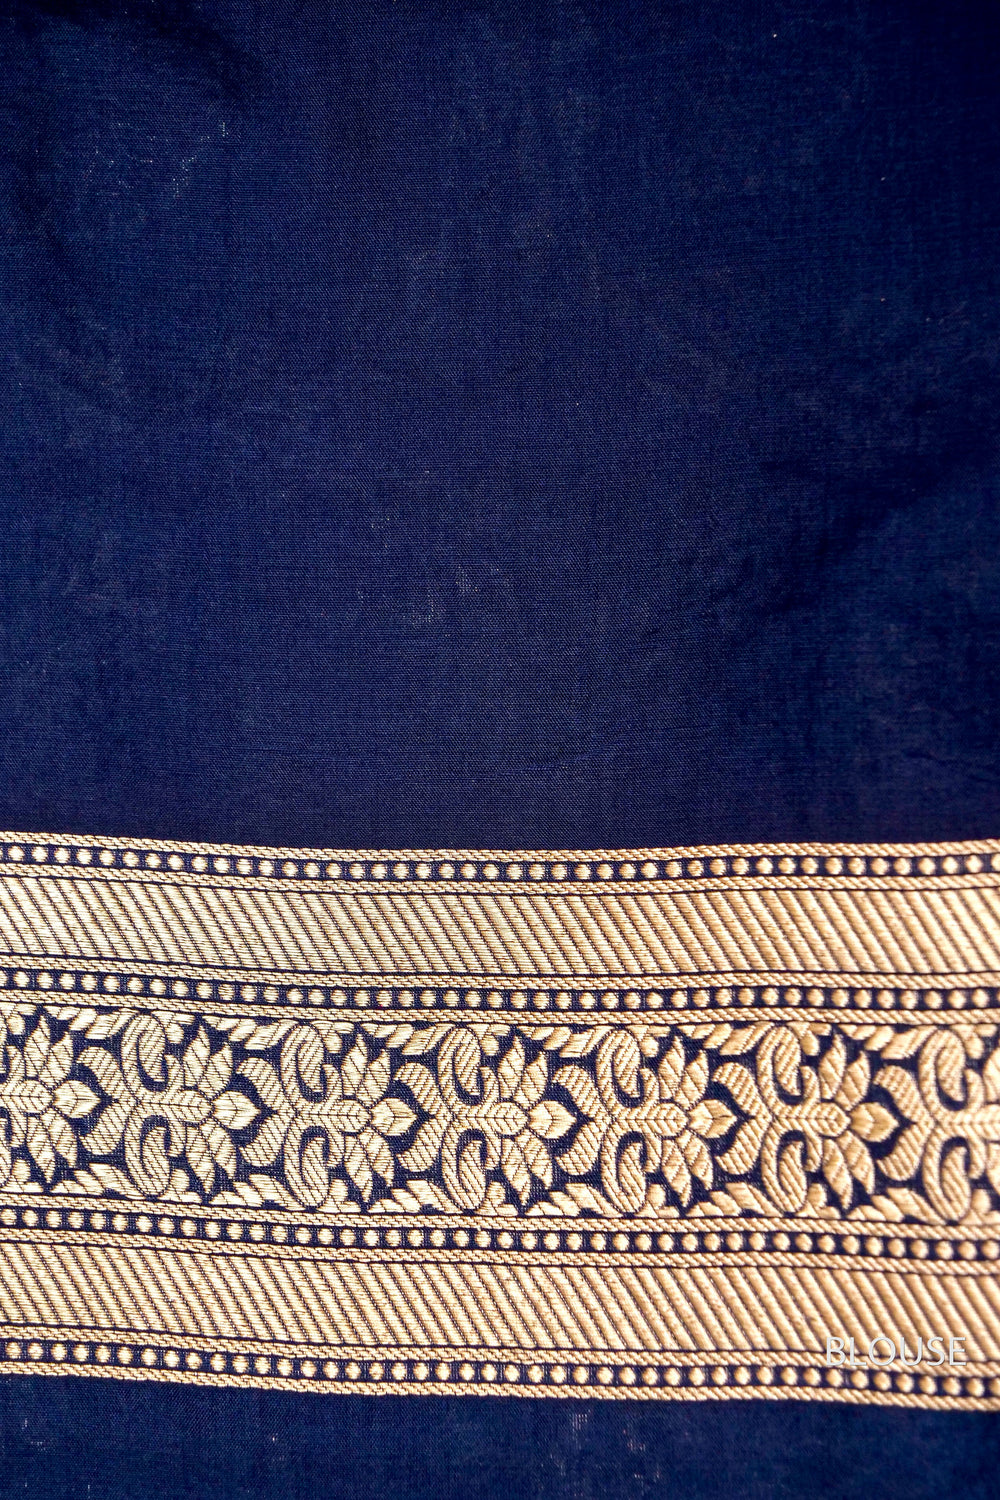 Handwoven Banarsi Navy Blue Katan Silk Saree